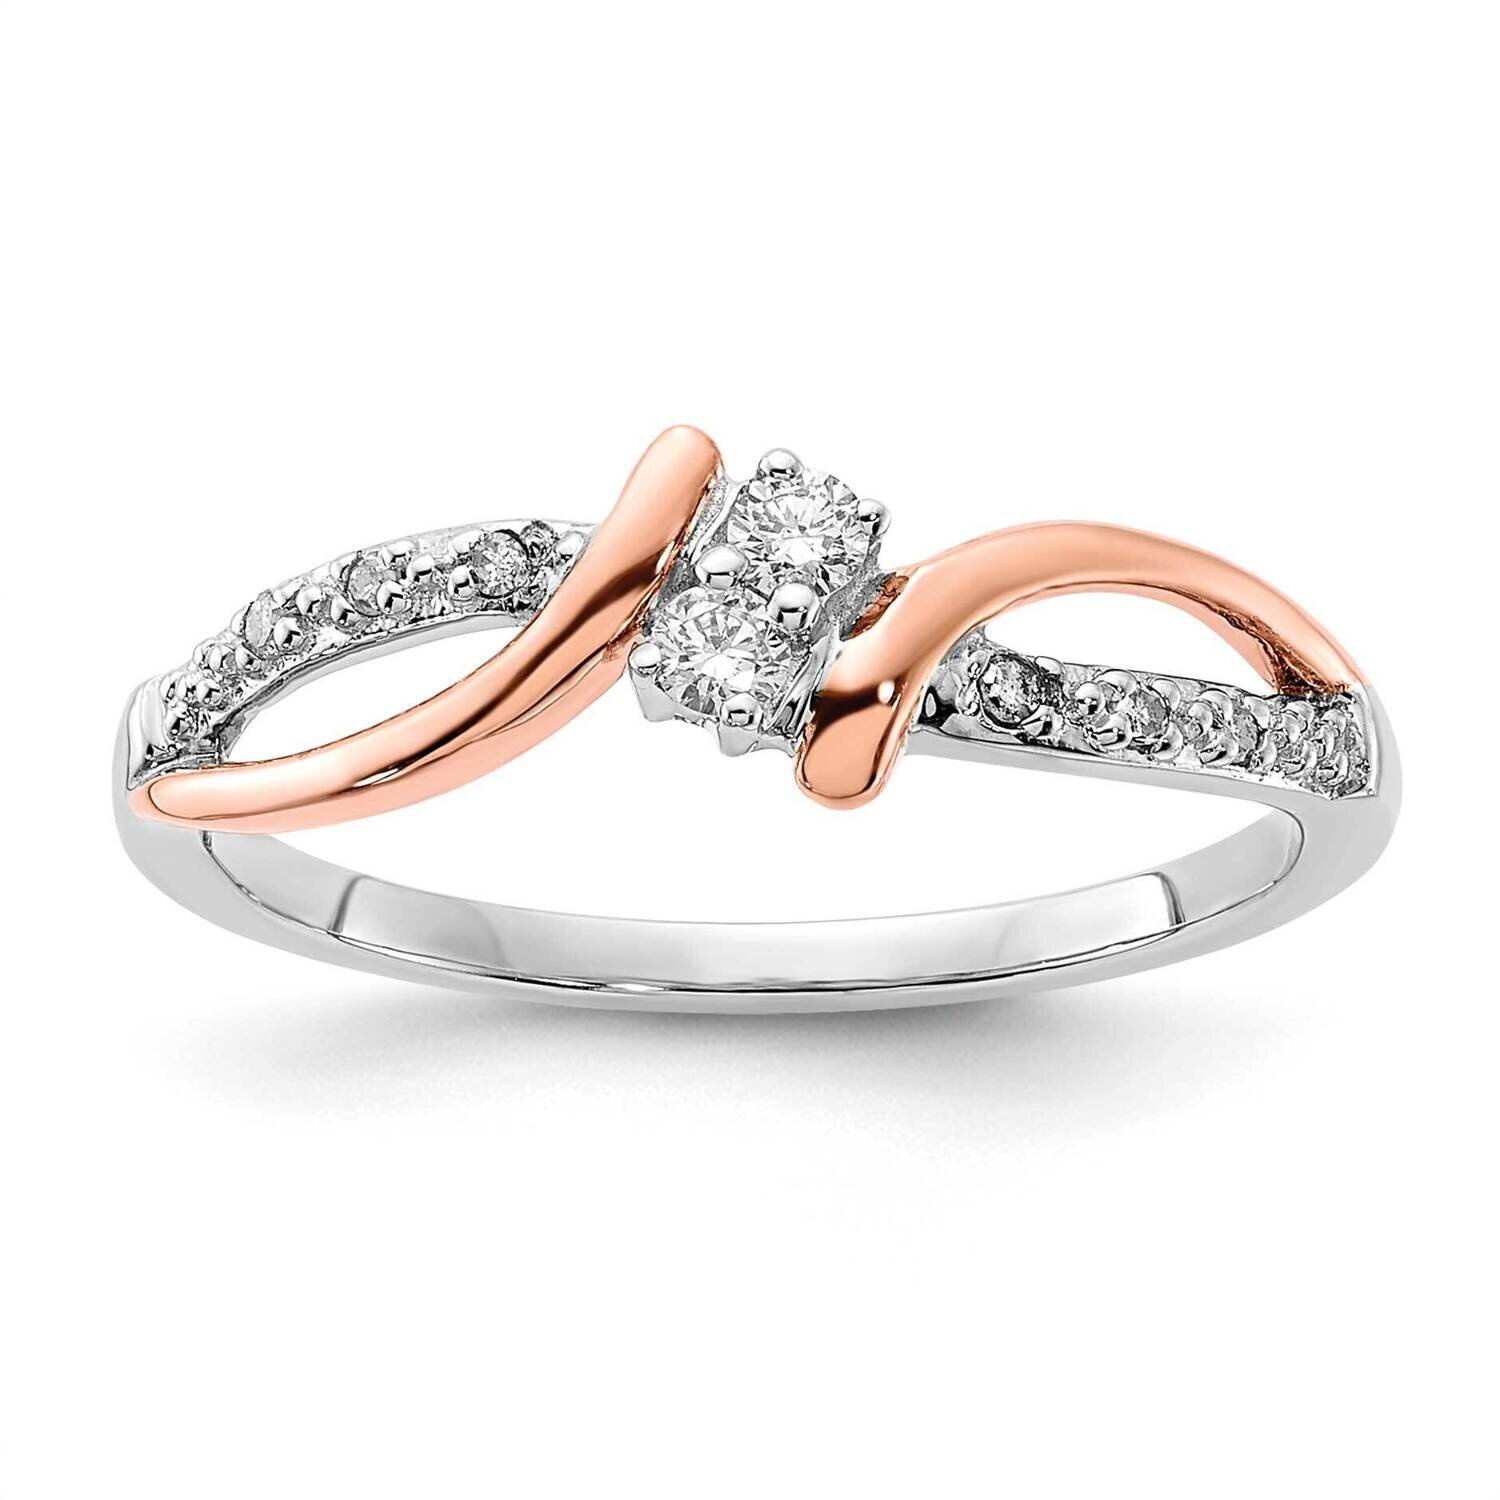 10k Gold Two Tone Diamond Fashion Ring RLD4107-0WRABS45